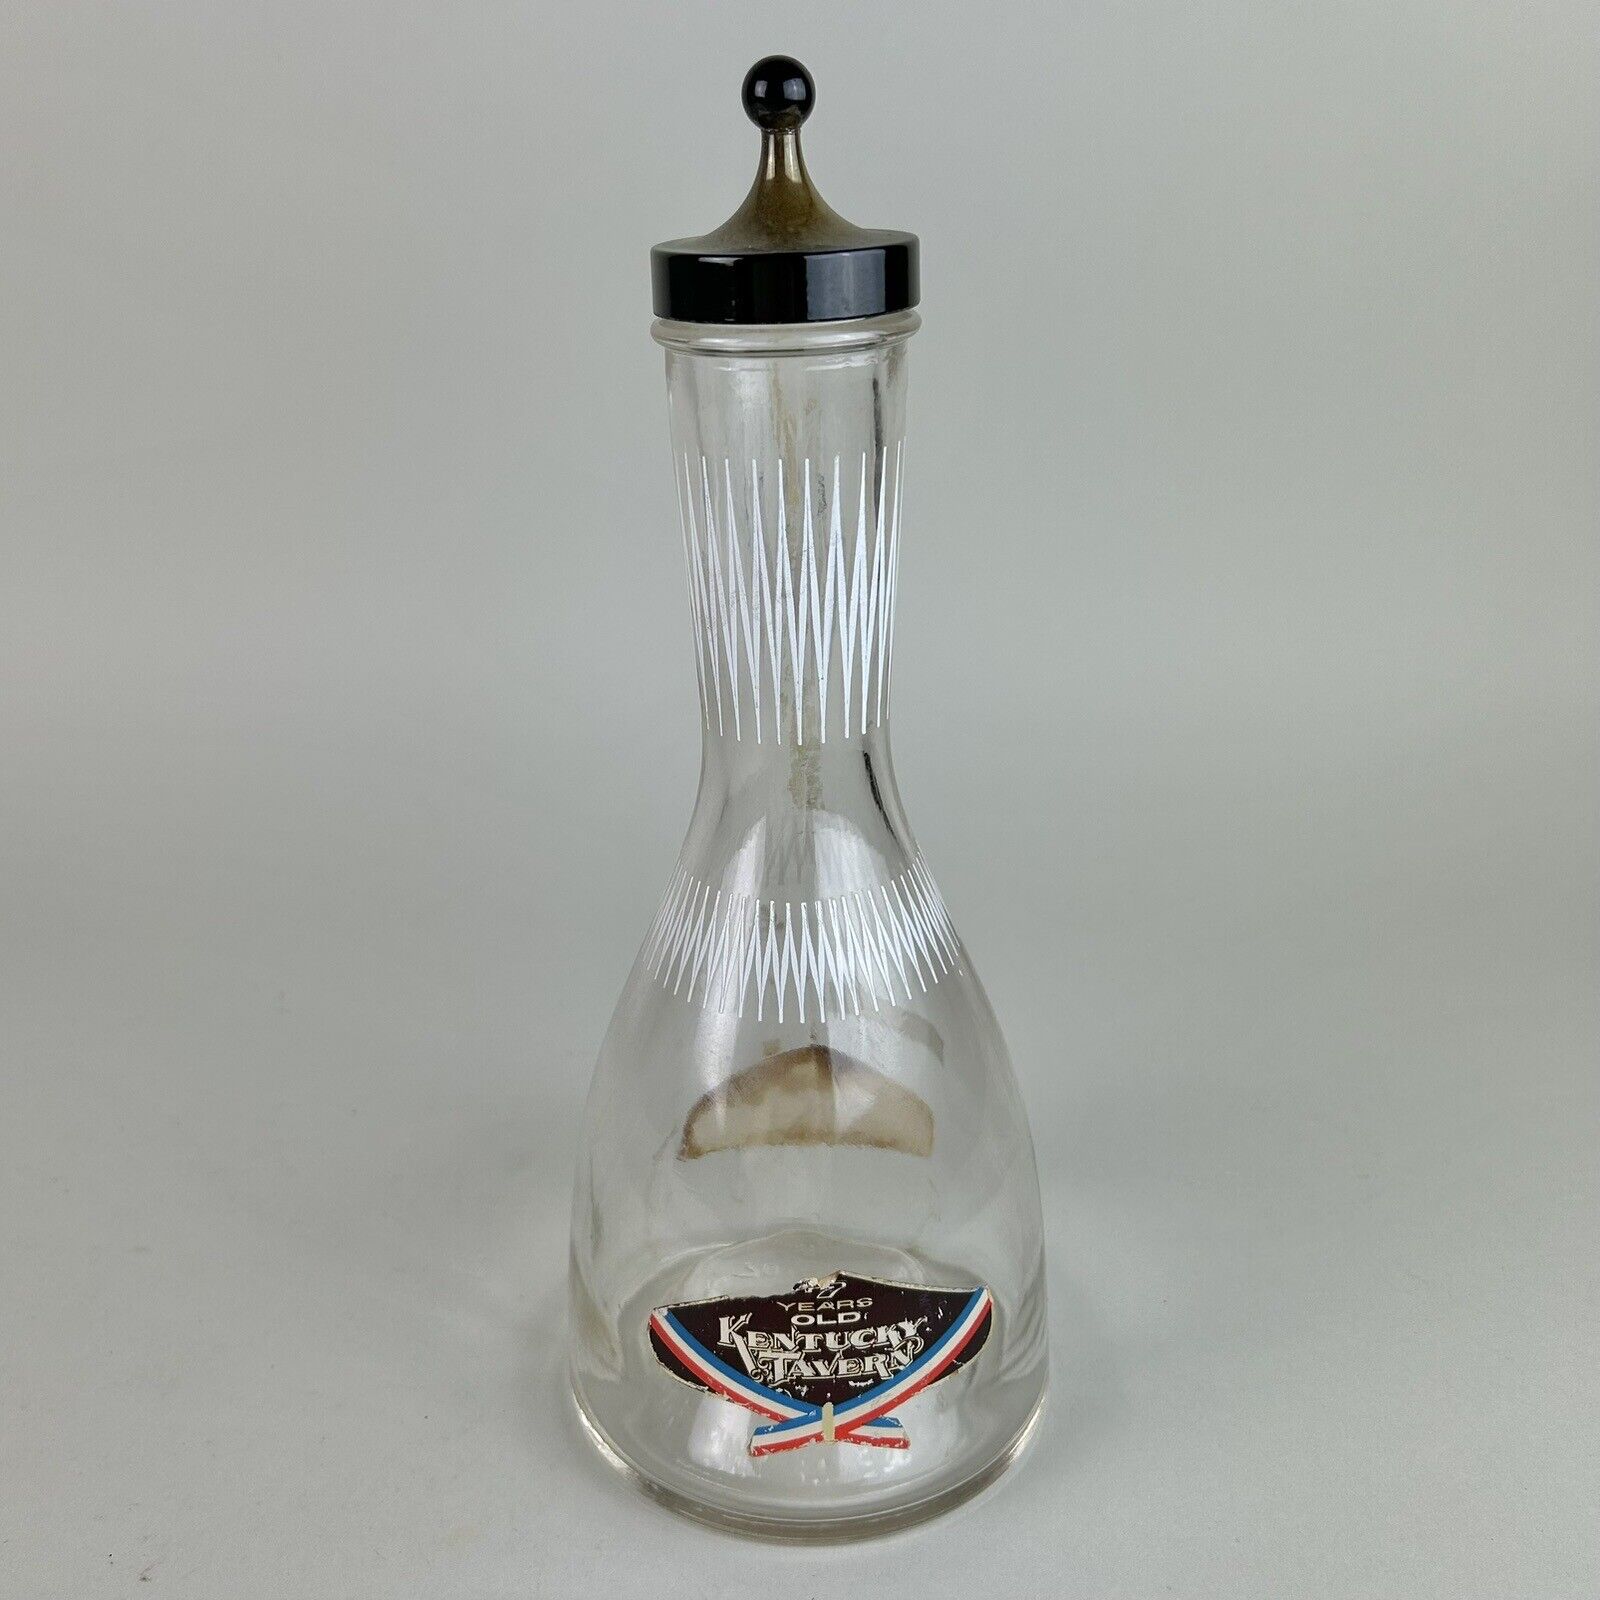 VTG 1957 Kentucky Tavern Bourbon Whiskey Glass Decanter Striped Atomic Bottle